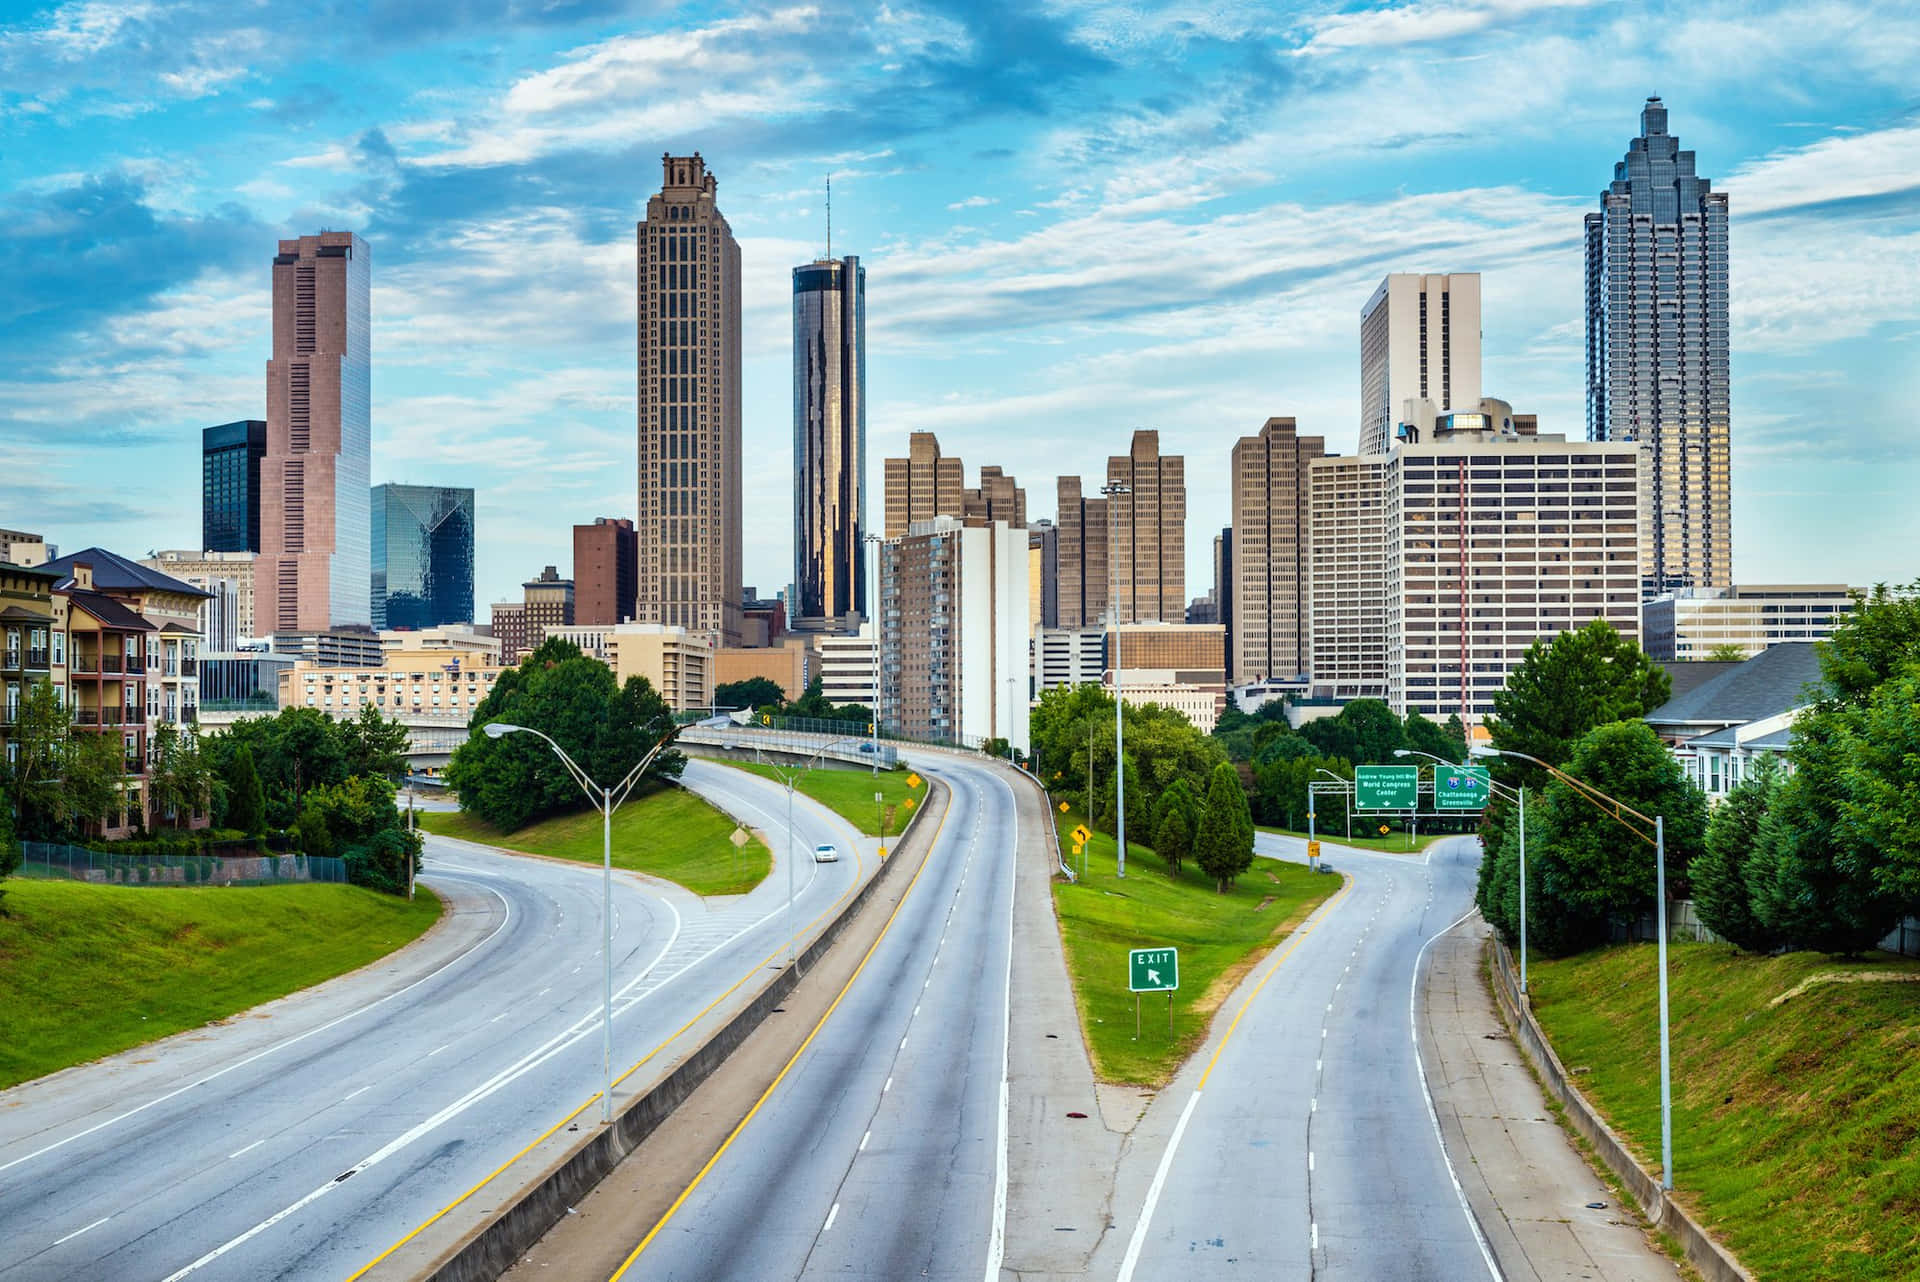 “Welcome to Atlanta, Georgia”